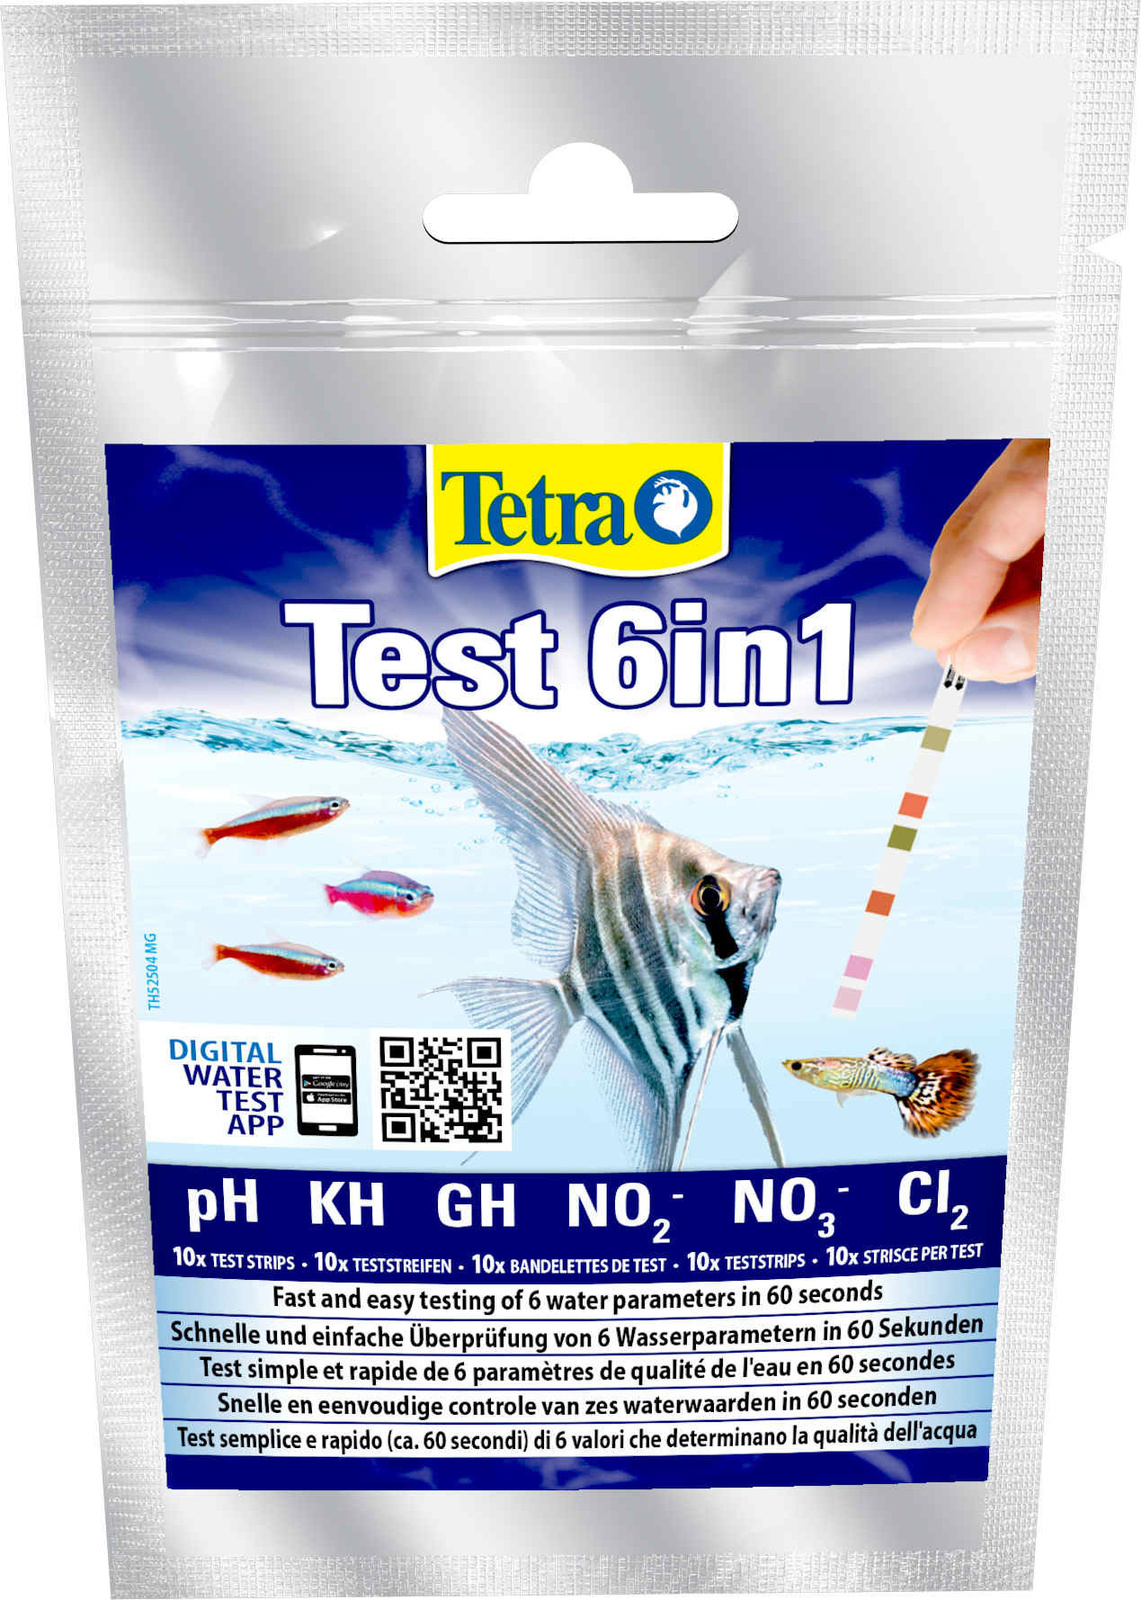 Тест воды для аквариума купить. Тест 6 в 1 GH/KH/no2/no3/PH/cl2, полоски для пресной воды 10шт. Набор тестов Tetra Test 6 в 1, 10 полосок. Tetra Test 6в1 GH/KH/no2/no3/PH/ci полоски для пресной воды 10шт. Tetra тест воды полоски.